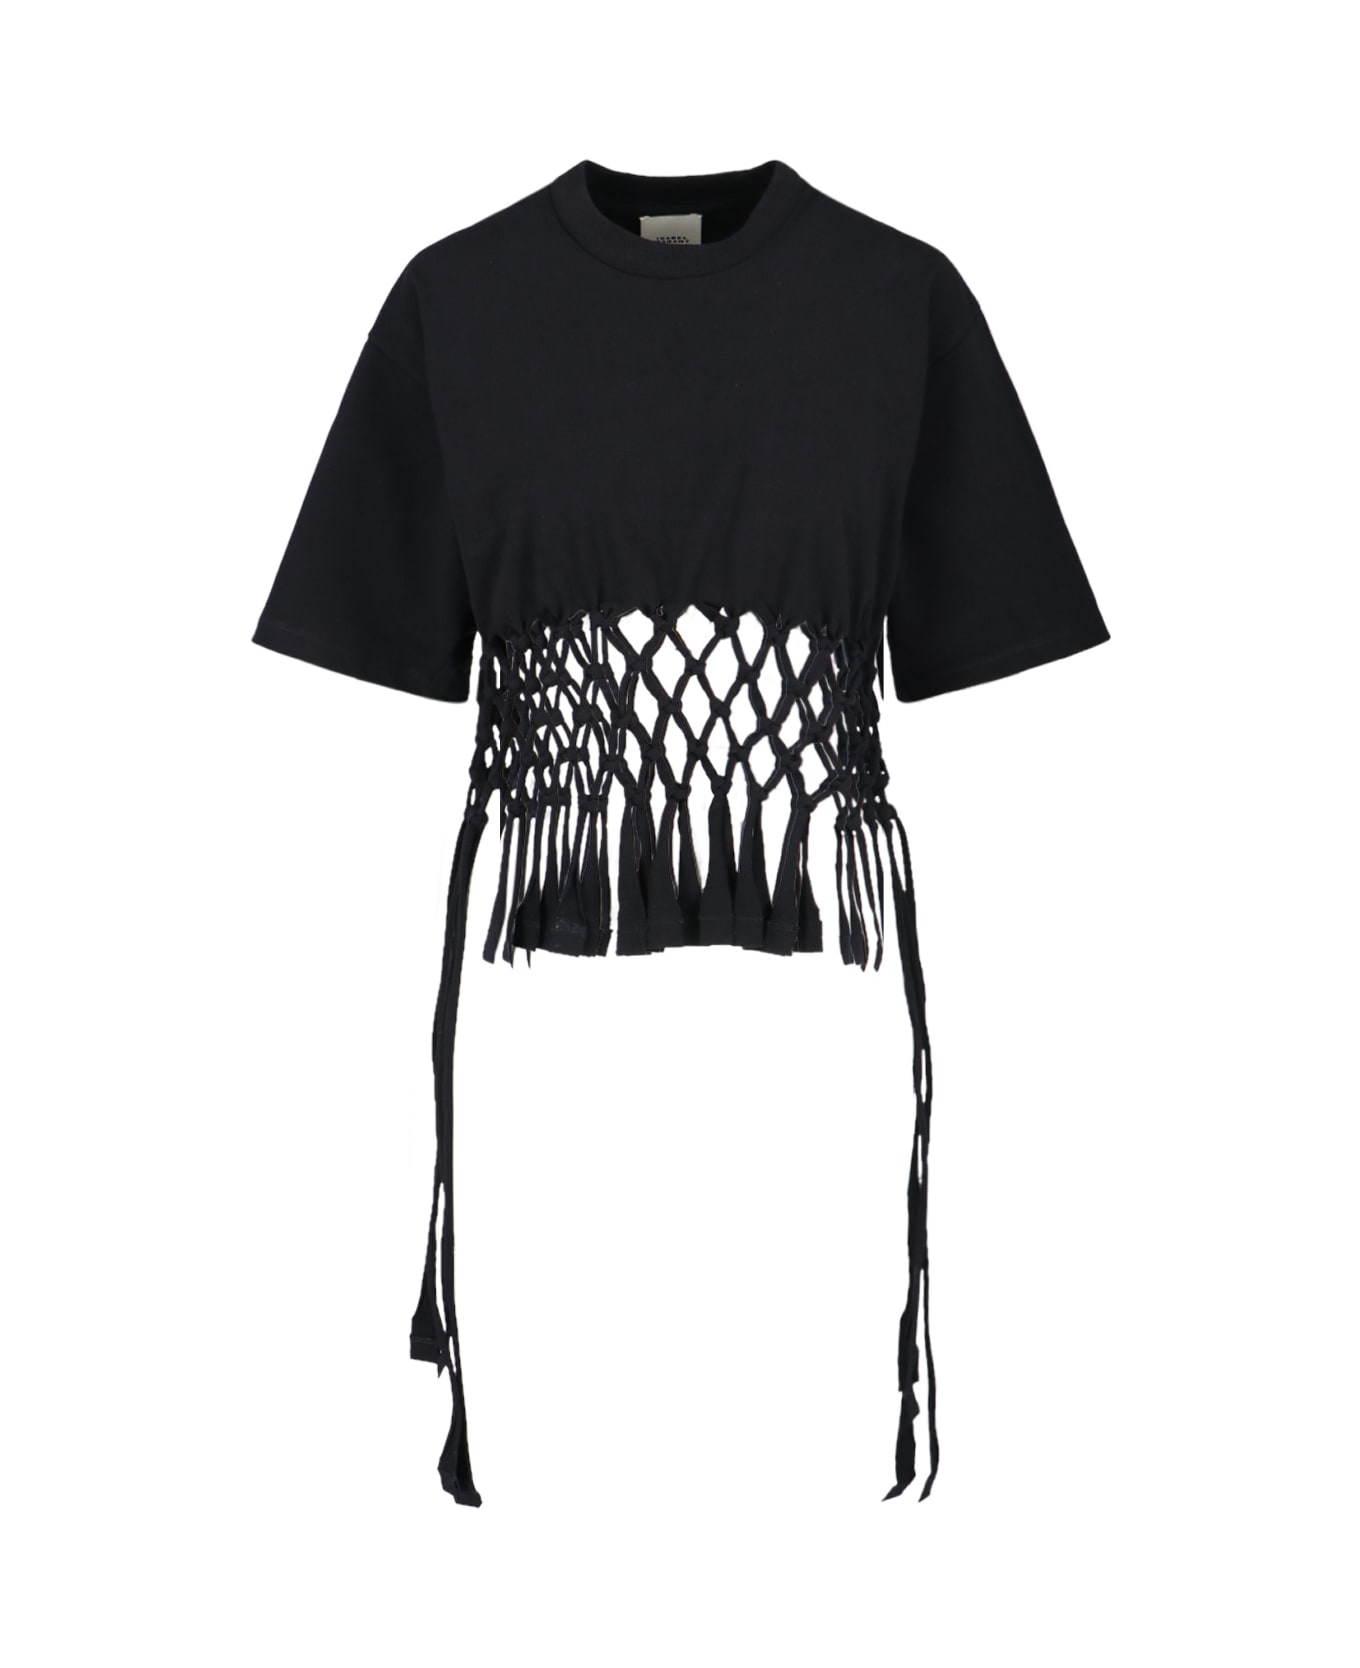 Isabel Marant T-shirt - Black Tシャツ